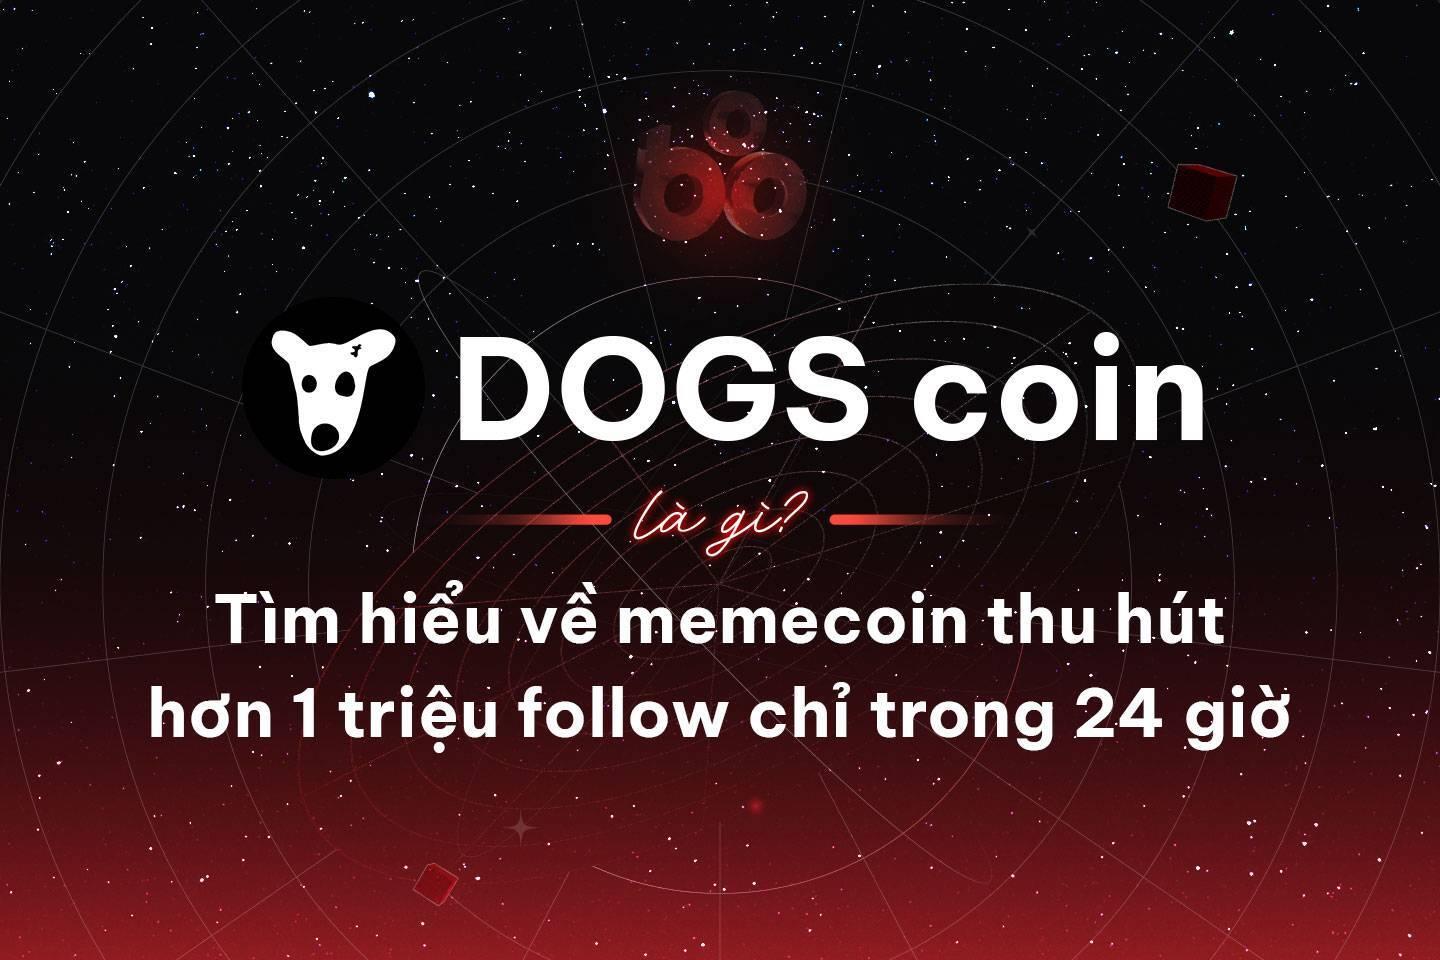 dogs-coin-la-gi-tim-hieu-ve-memecoin-thu-hut-hon-1-trieu-follow-chi-trong-24-gio